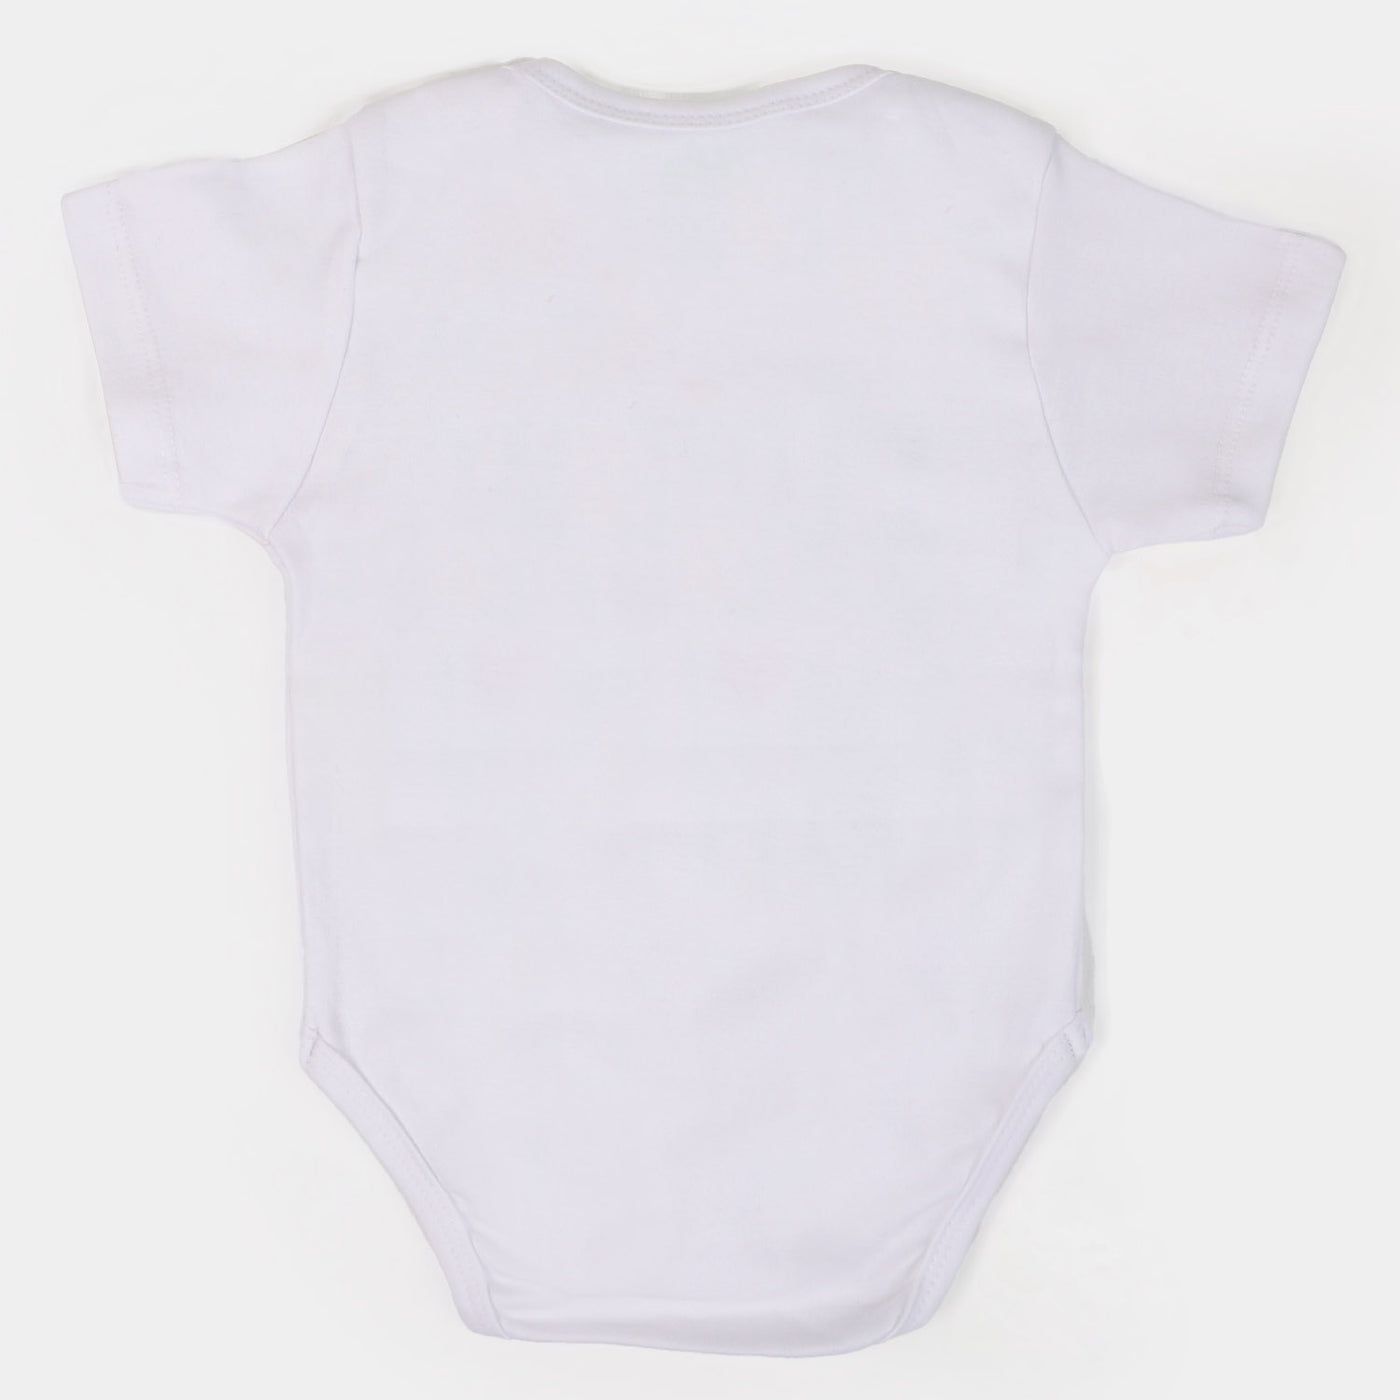 Infant Cotton Basic Romper Unisex Family - White